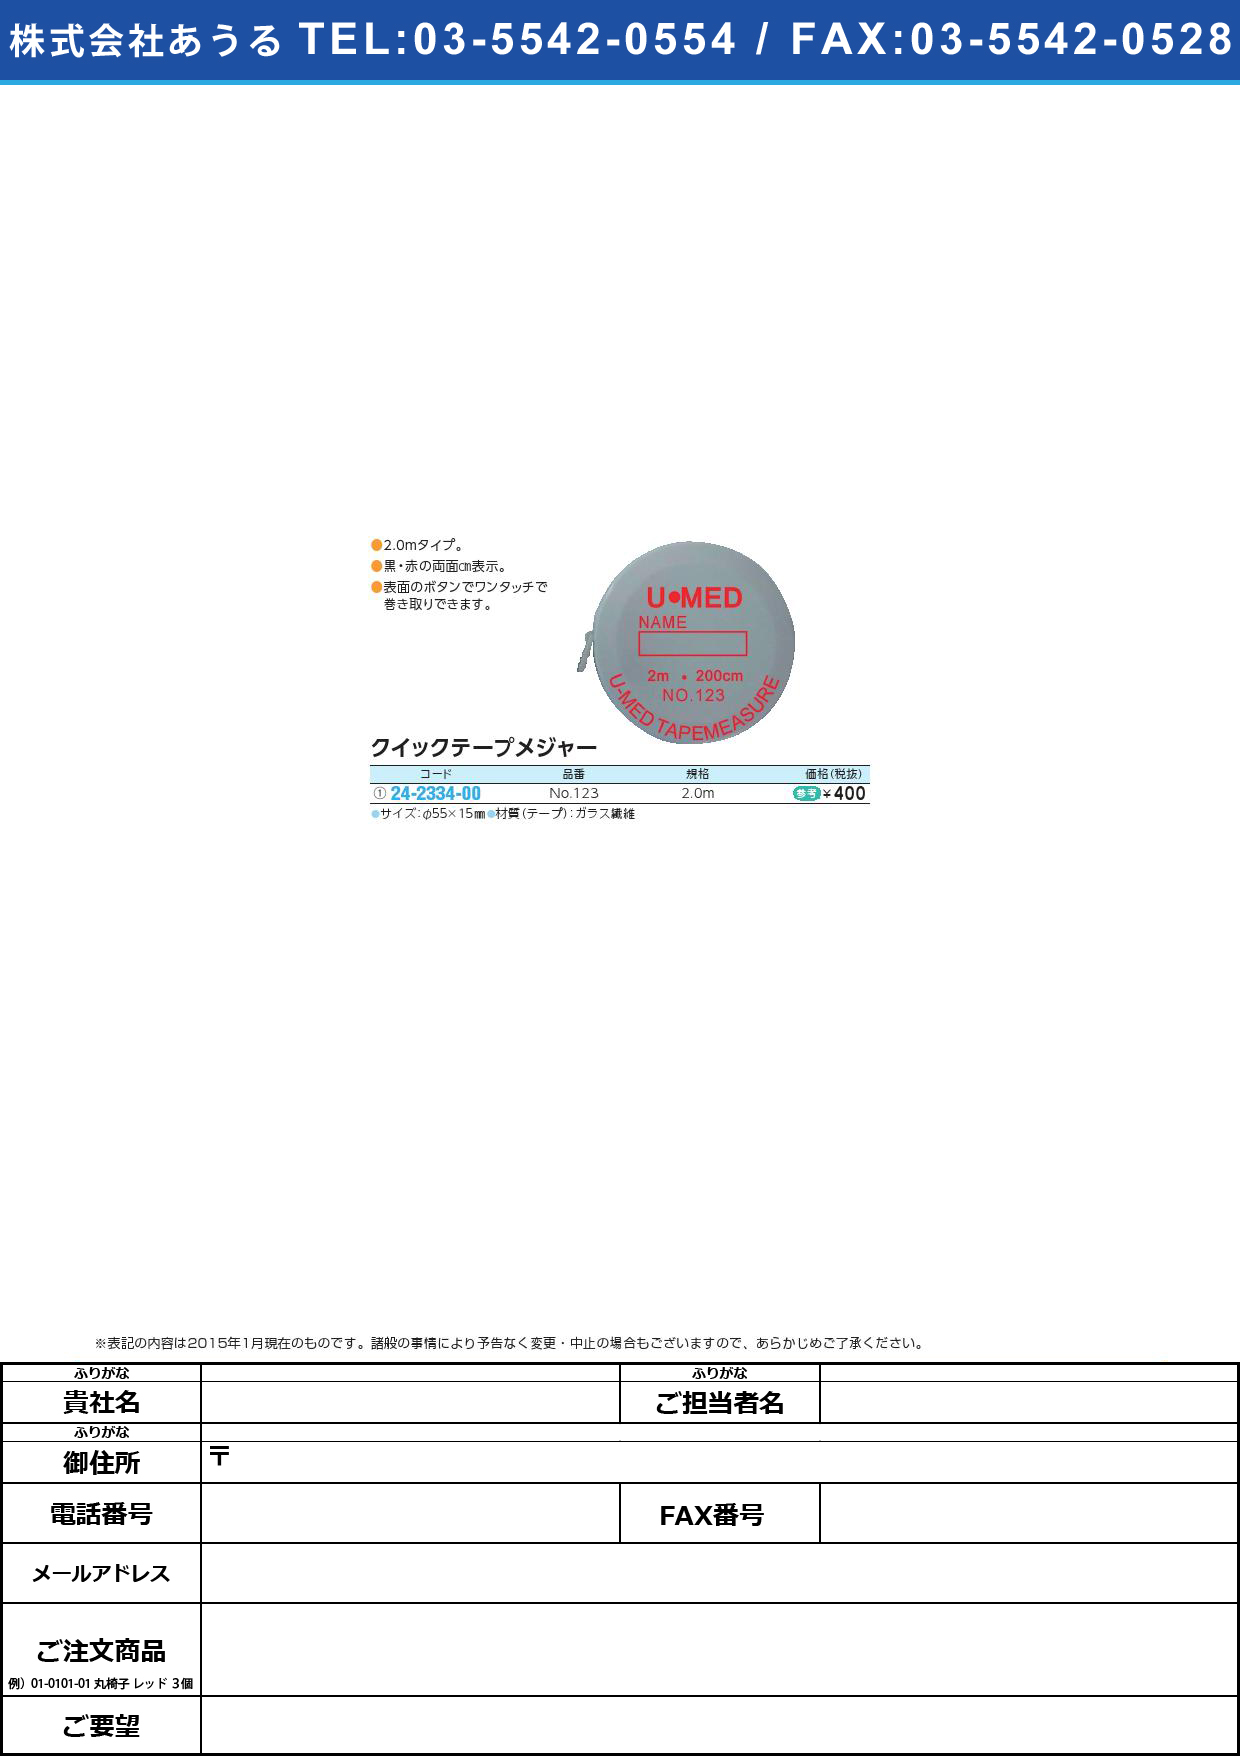 クイックテープメジャー ｸｲｯｸﾃｰﾌﾟﾒｼﾞｬｰ NO.123(2.0M)【1個単位】(24-2334-00)